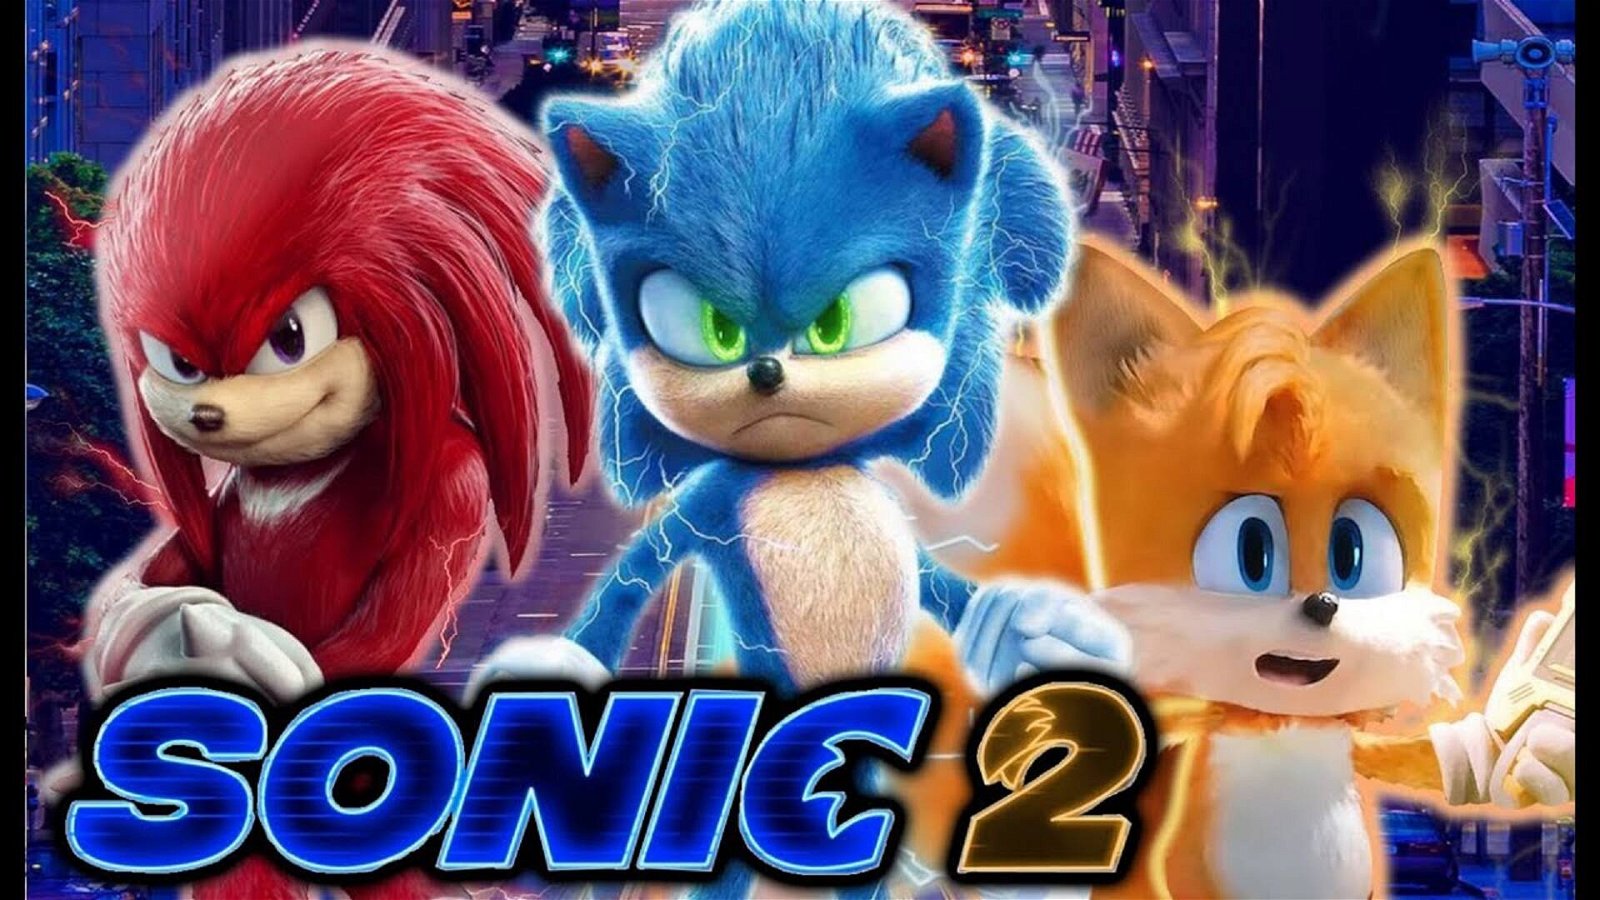 Immagine di Sonic the Hedgehog 2: trapelata la trama del film